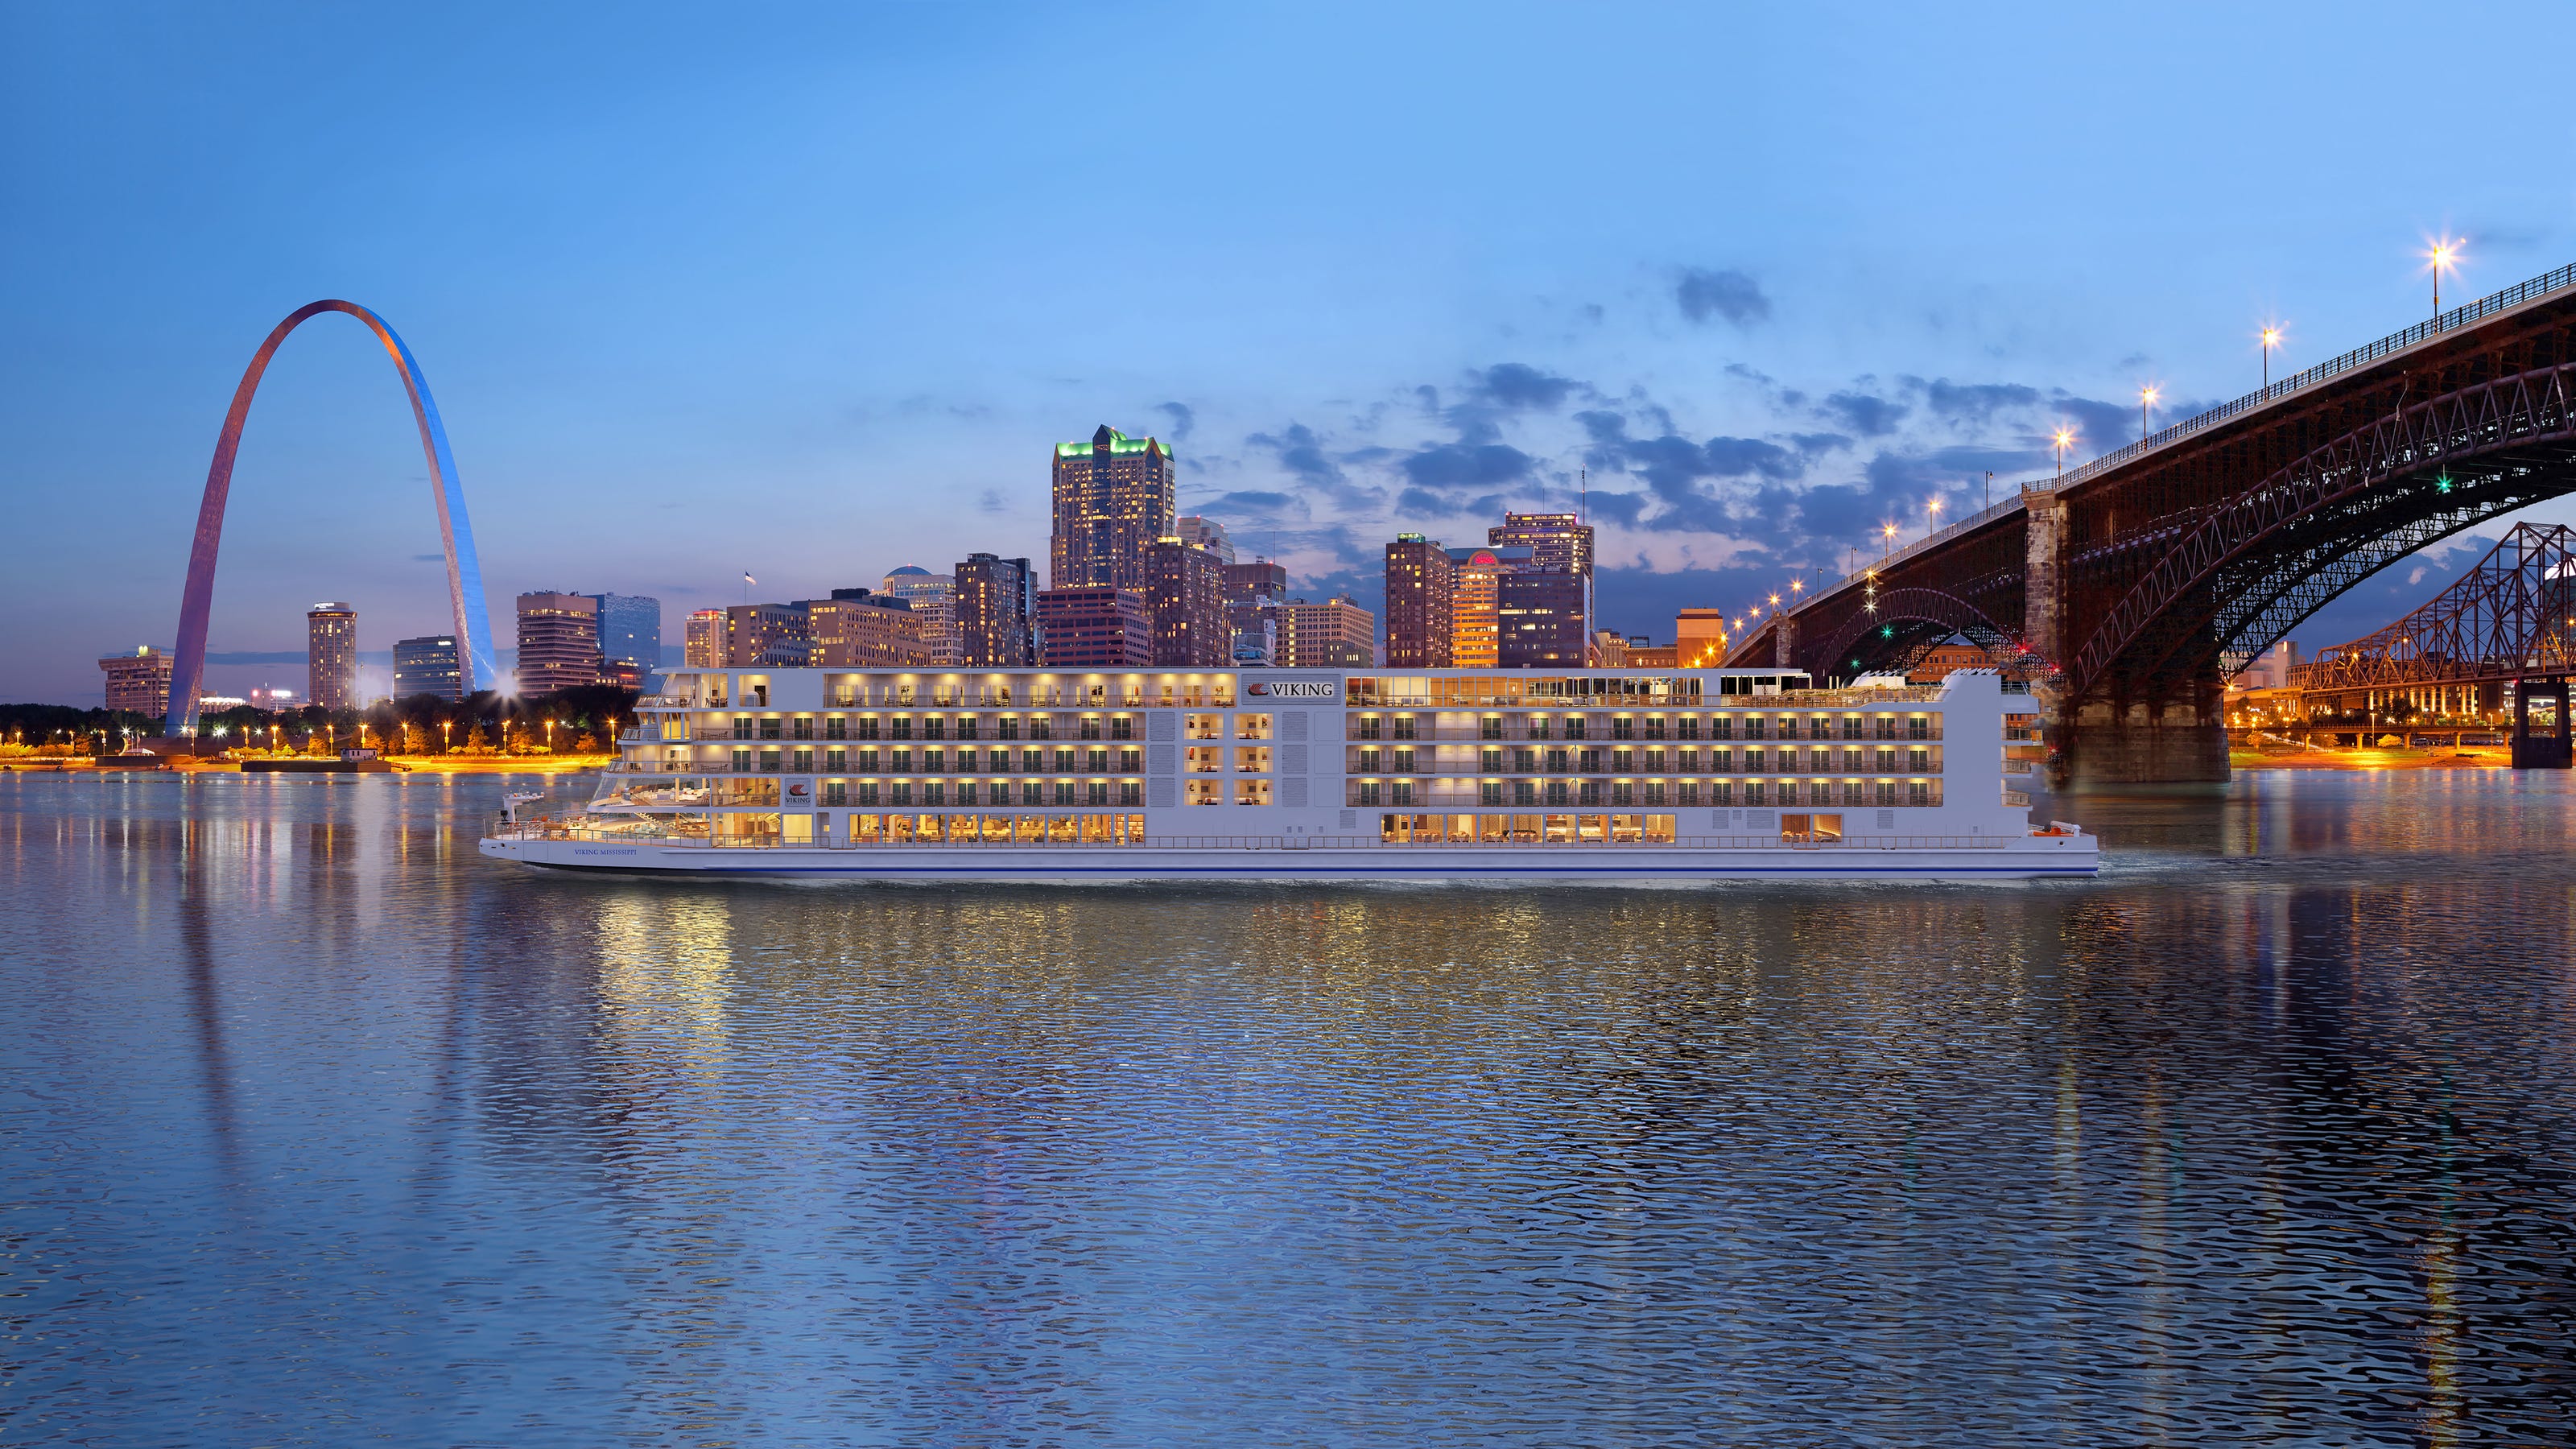 viking mississippi river cruises 2022